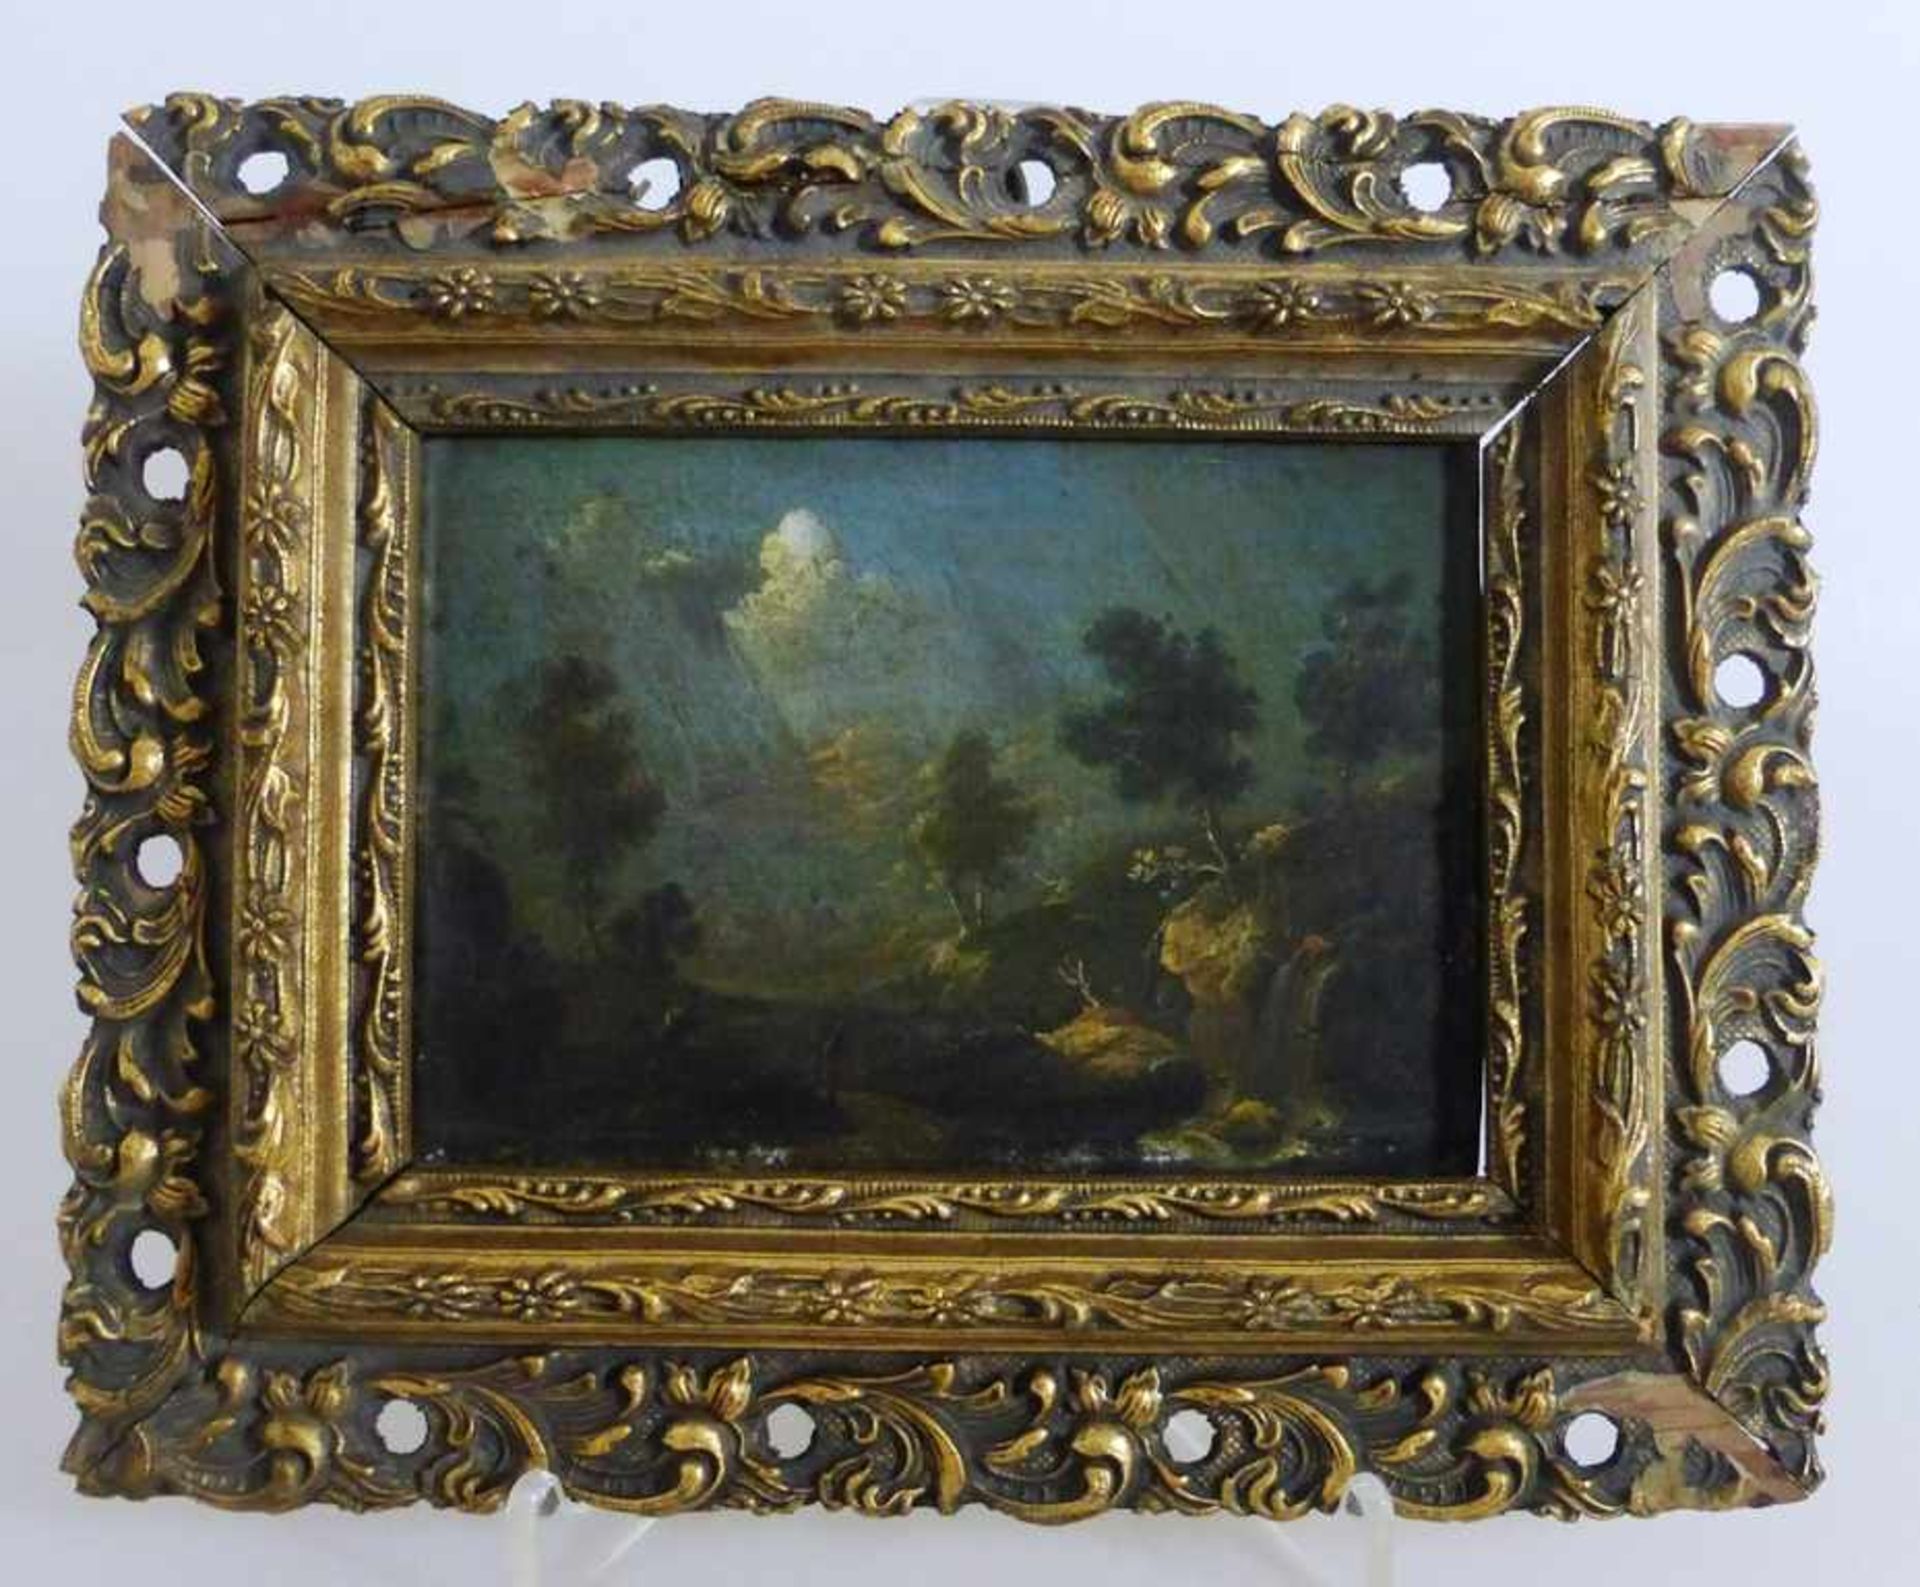 Gemälde um 1800, unbekannter Künstler, Öl/Holz, kleines Gemälde mit Landschaftsdarstellung und